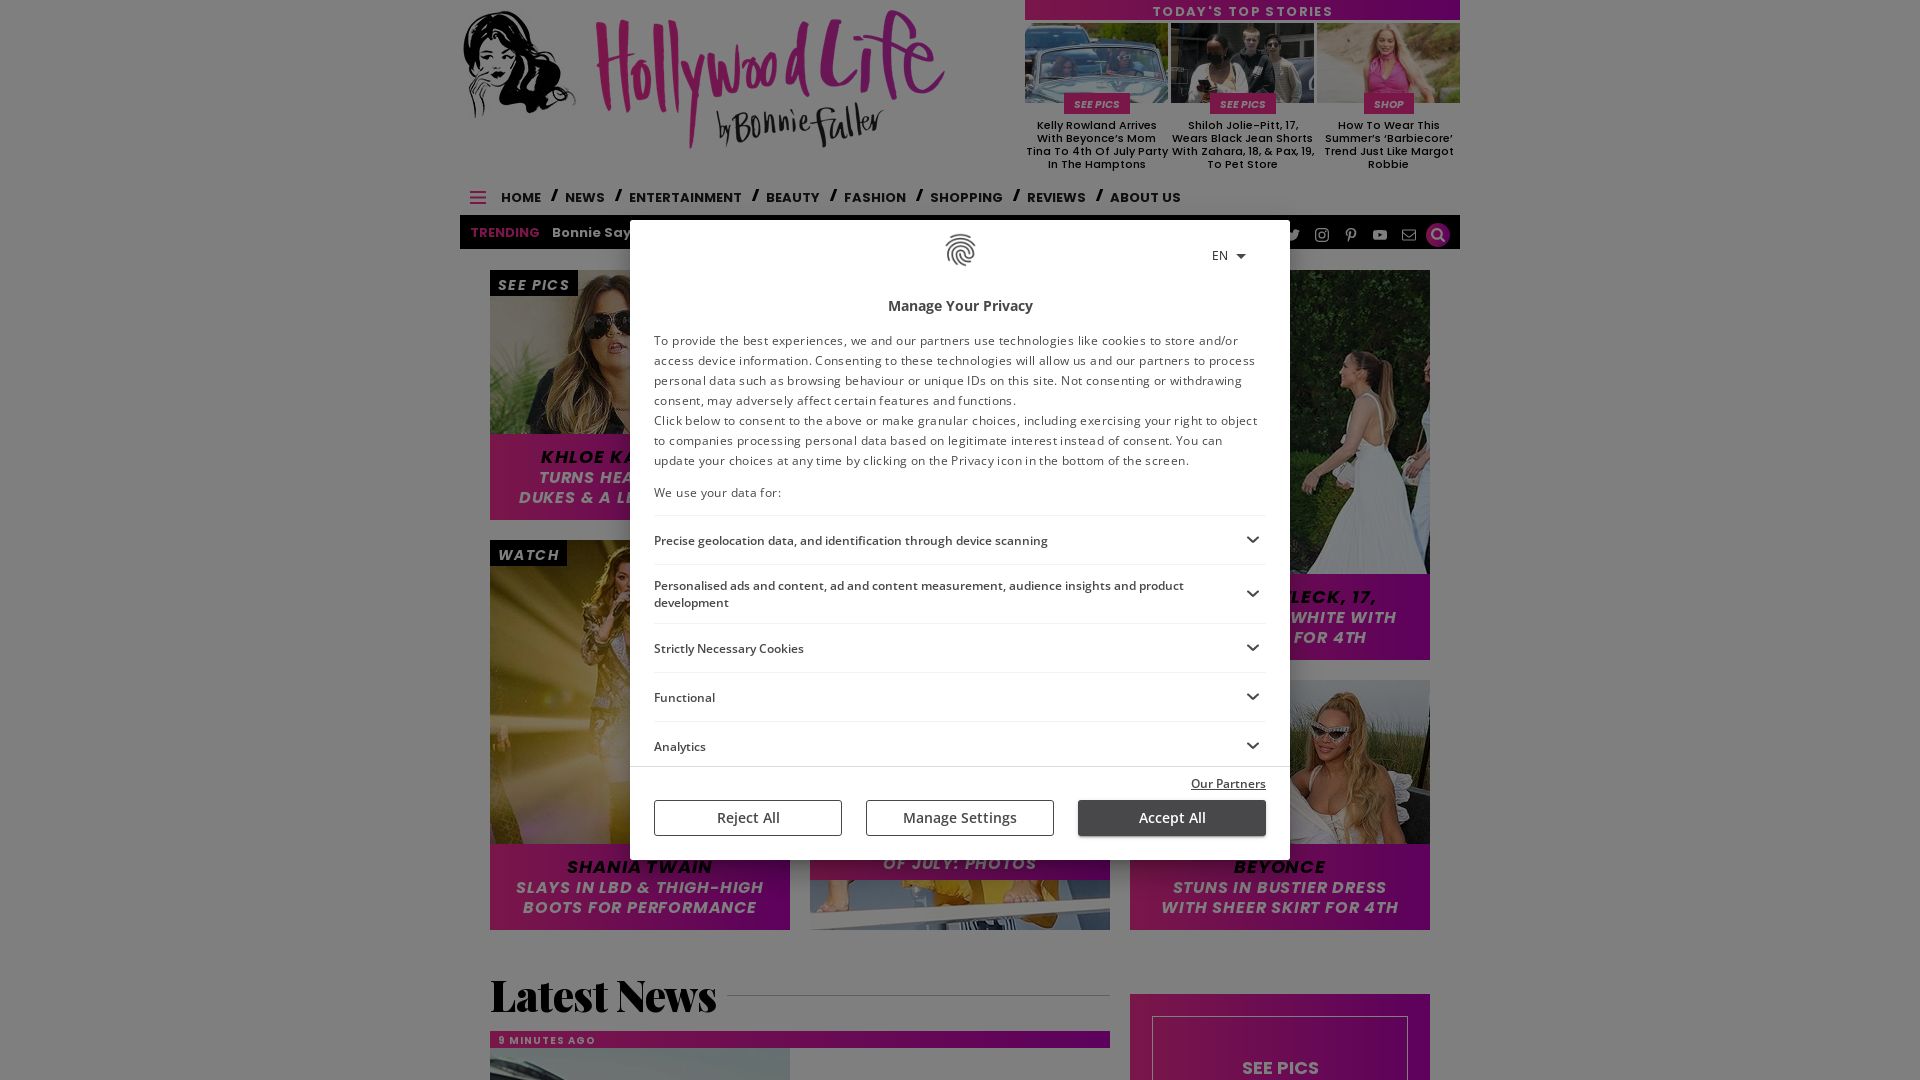 Status do site hollywoodlife.com está   ONLINE